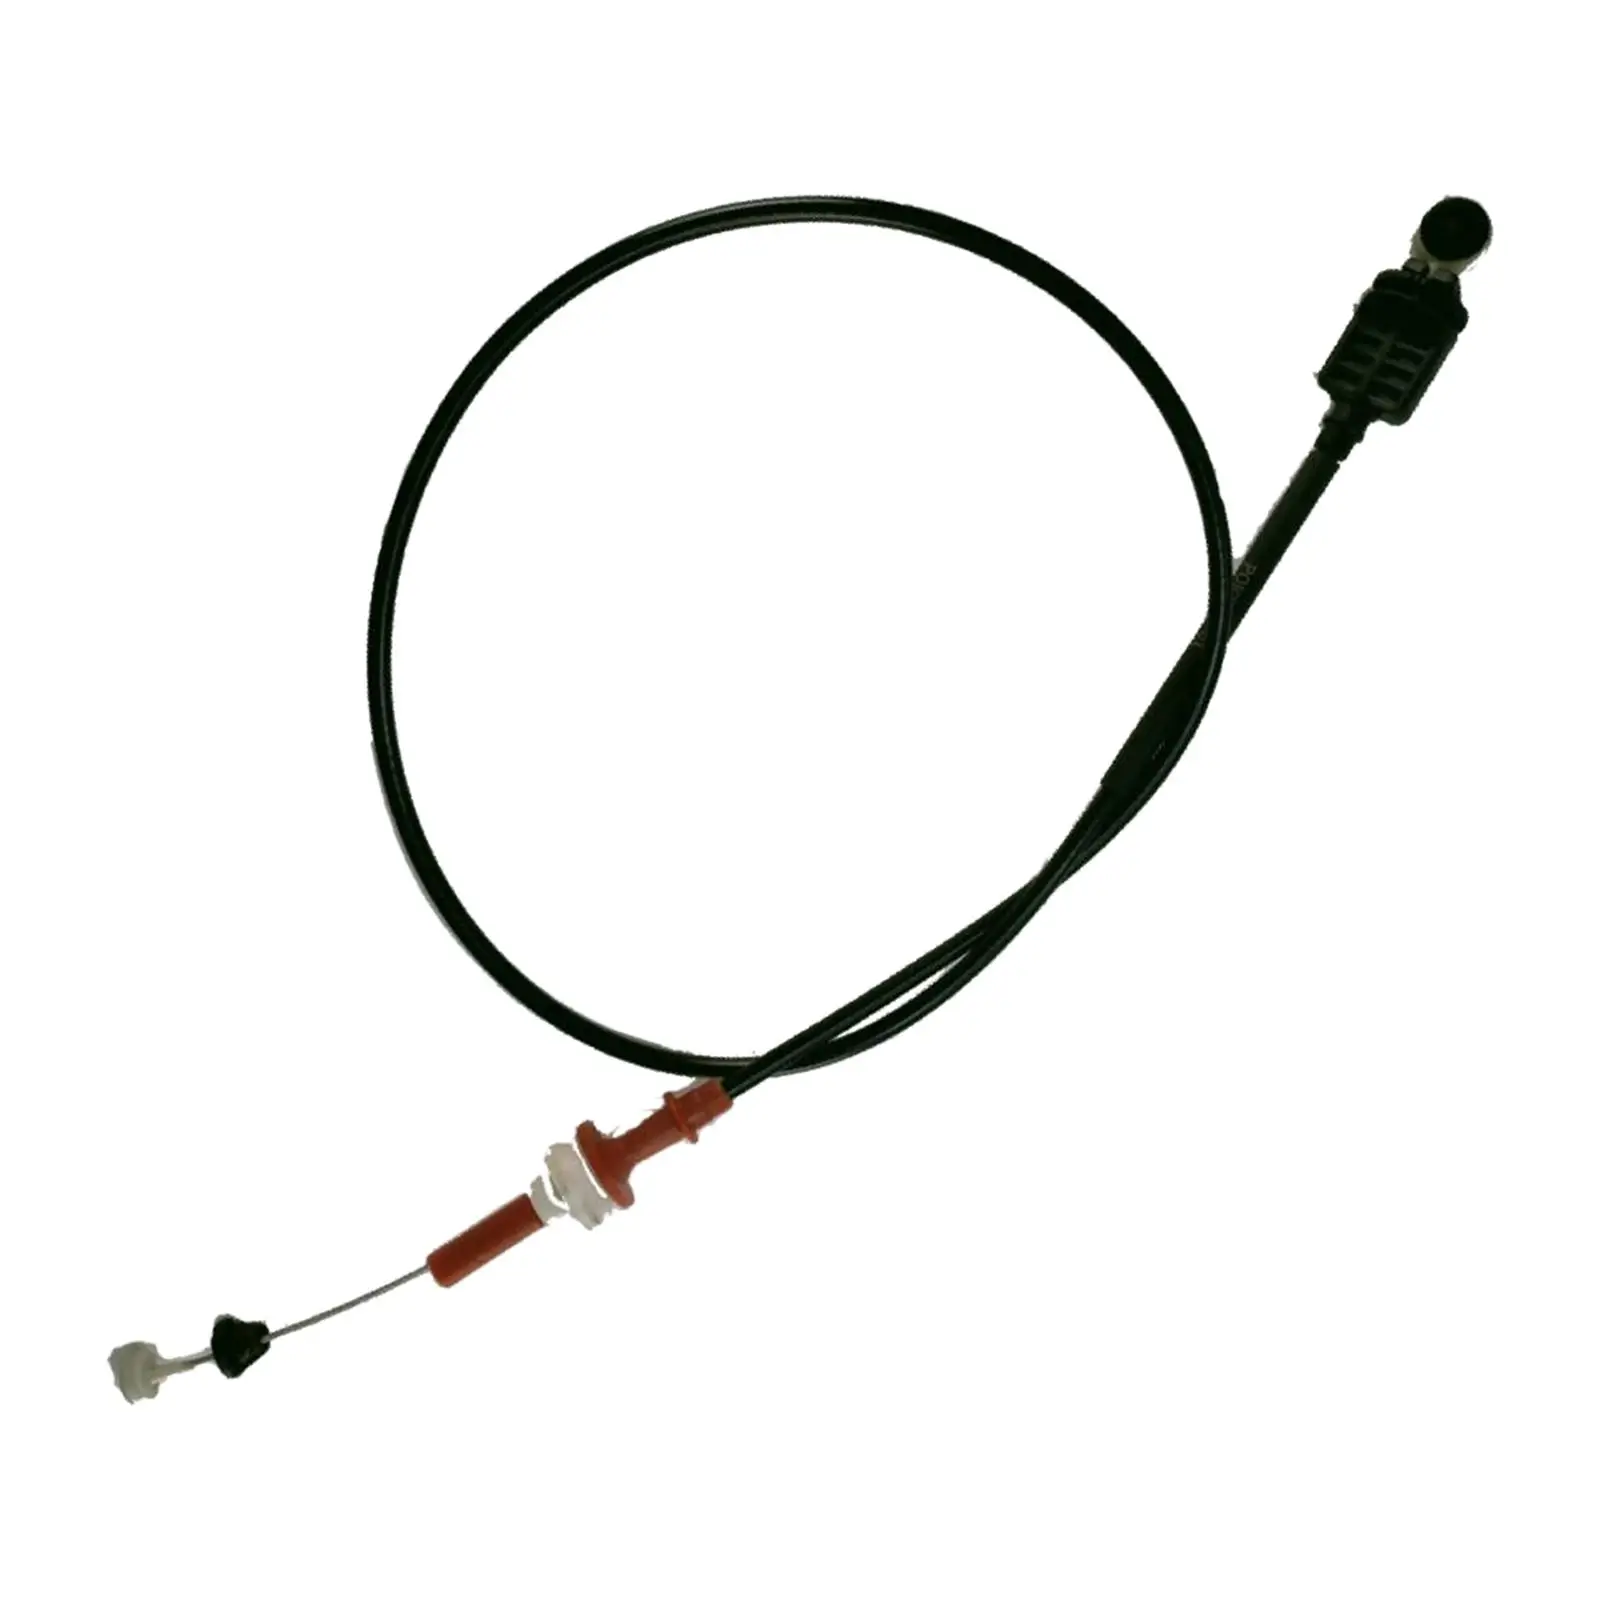 Throttle Oil Cable Line Spare Parts Replaces Premium 1S719C799DG Throttle Cable 3S719C799BA for Mondeo MK3 2003-2006 2.0T